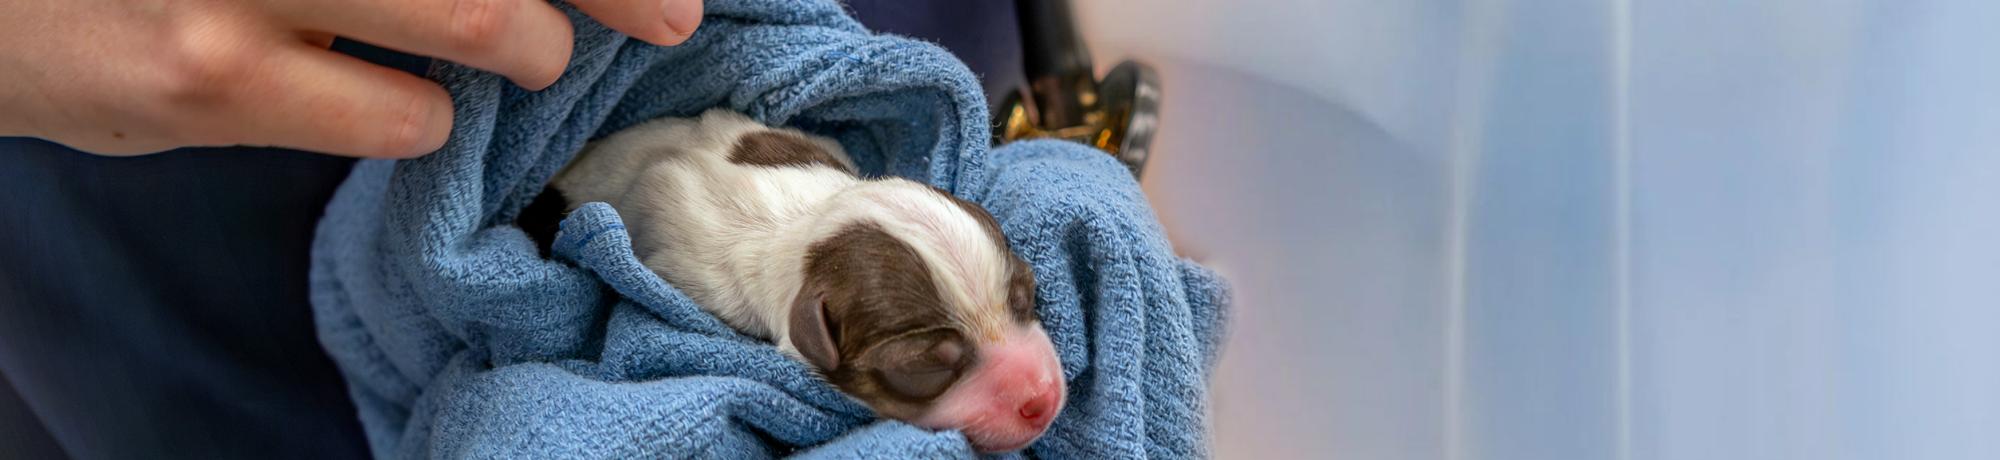 a vet holding a newborn puppy